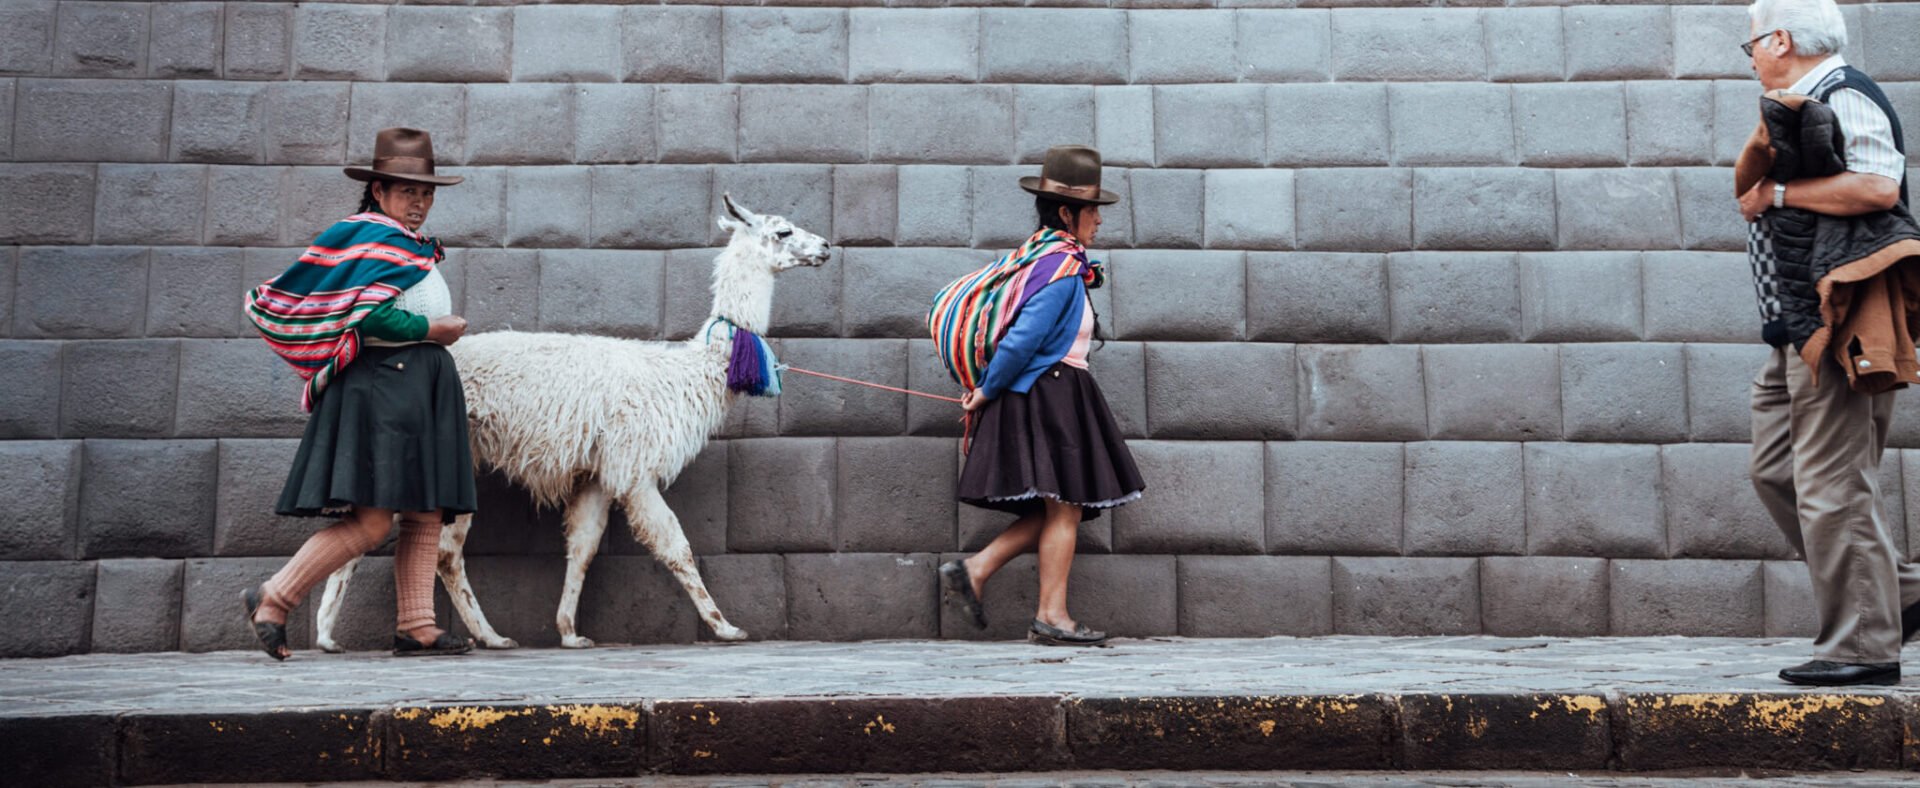 Cholas andando com uma lhama no centro de Cusco | Roteiro em Cusco, Peru